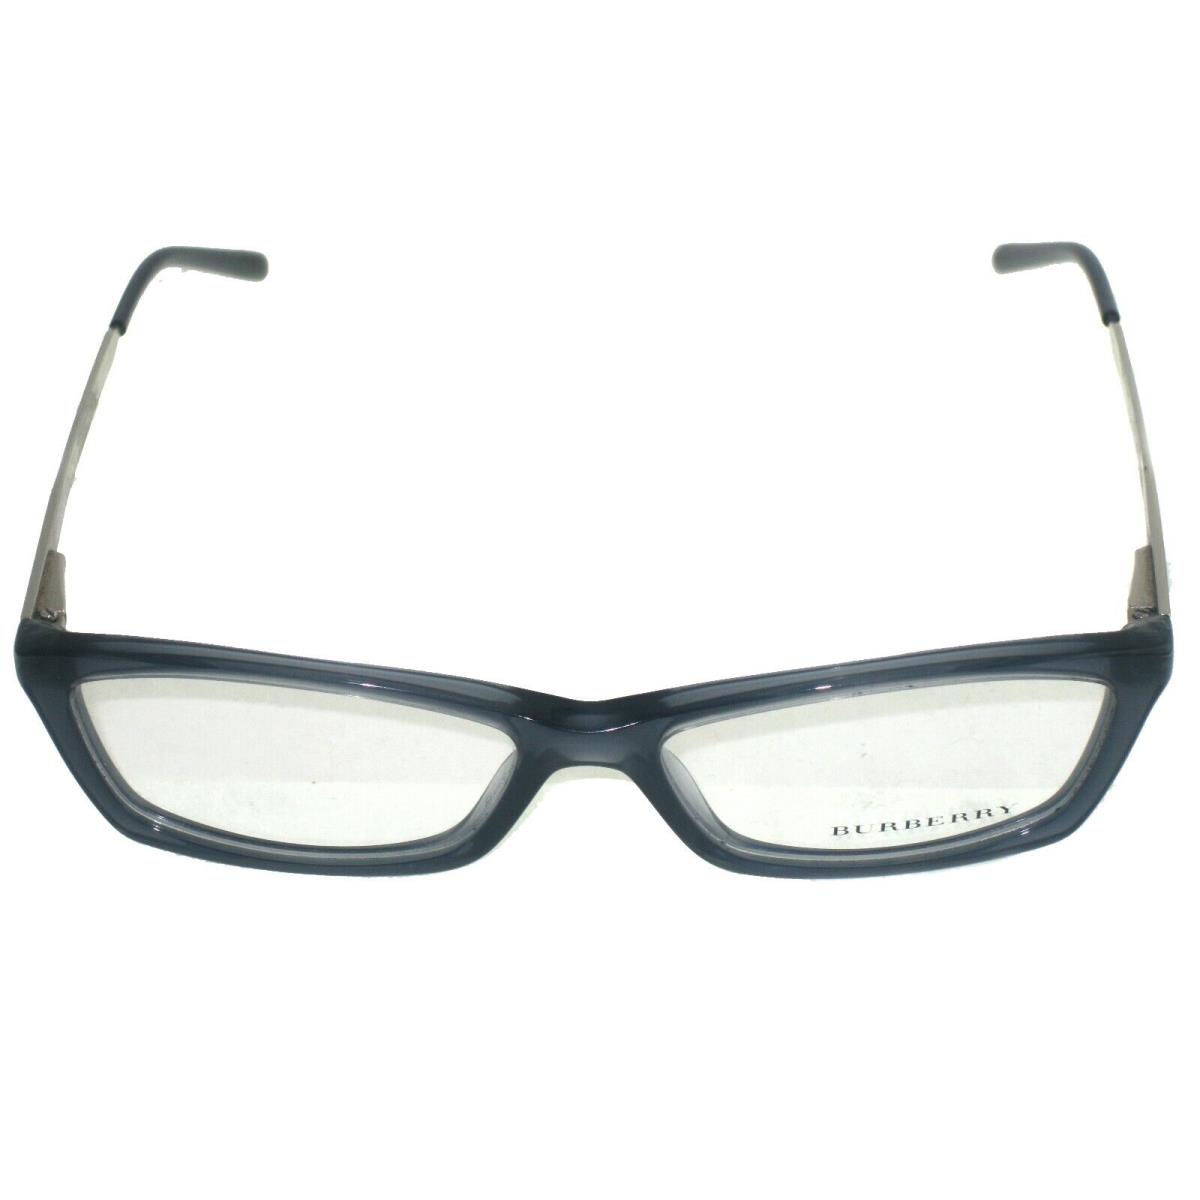 Burberry Glasses Frames B2129 3019 53-15-140 Eyeglasses Optical Frame